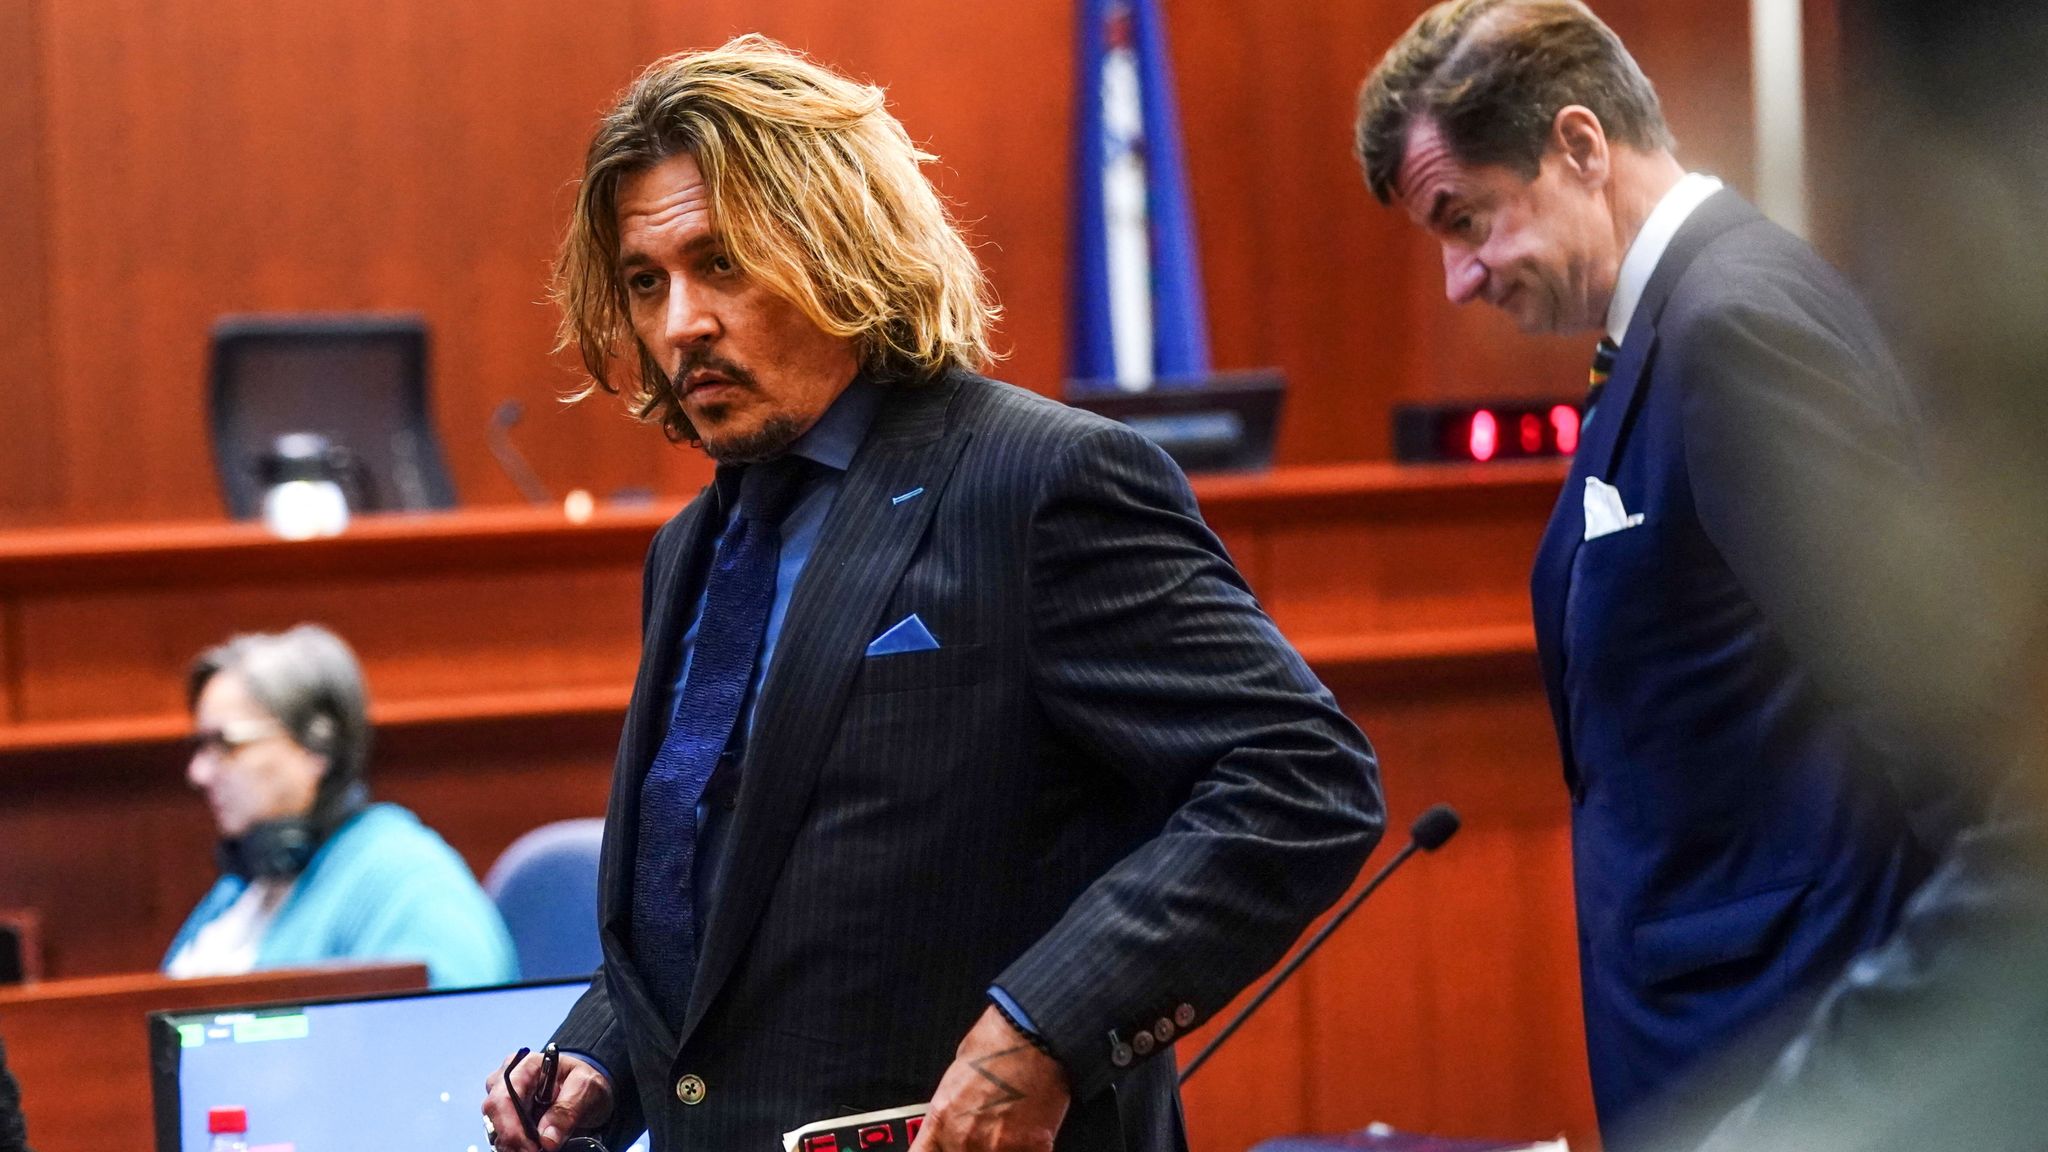 Depp vs Heard Verdict: Actor Johnny Depp cross-examined by Amber Heard's team in libel case